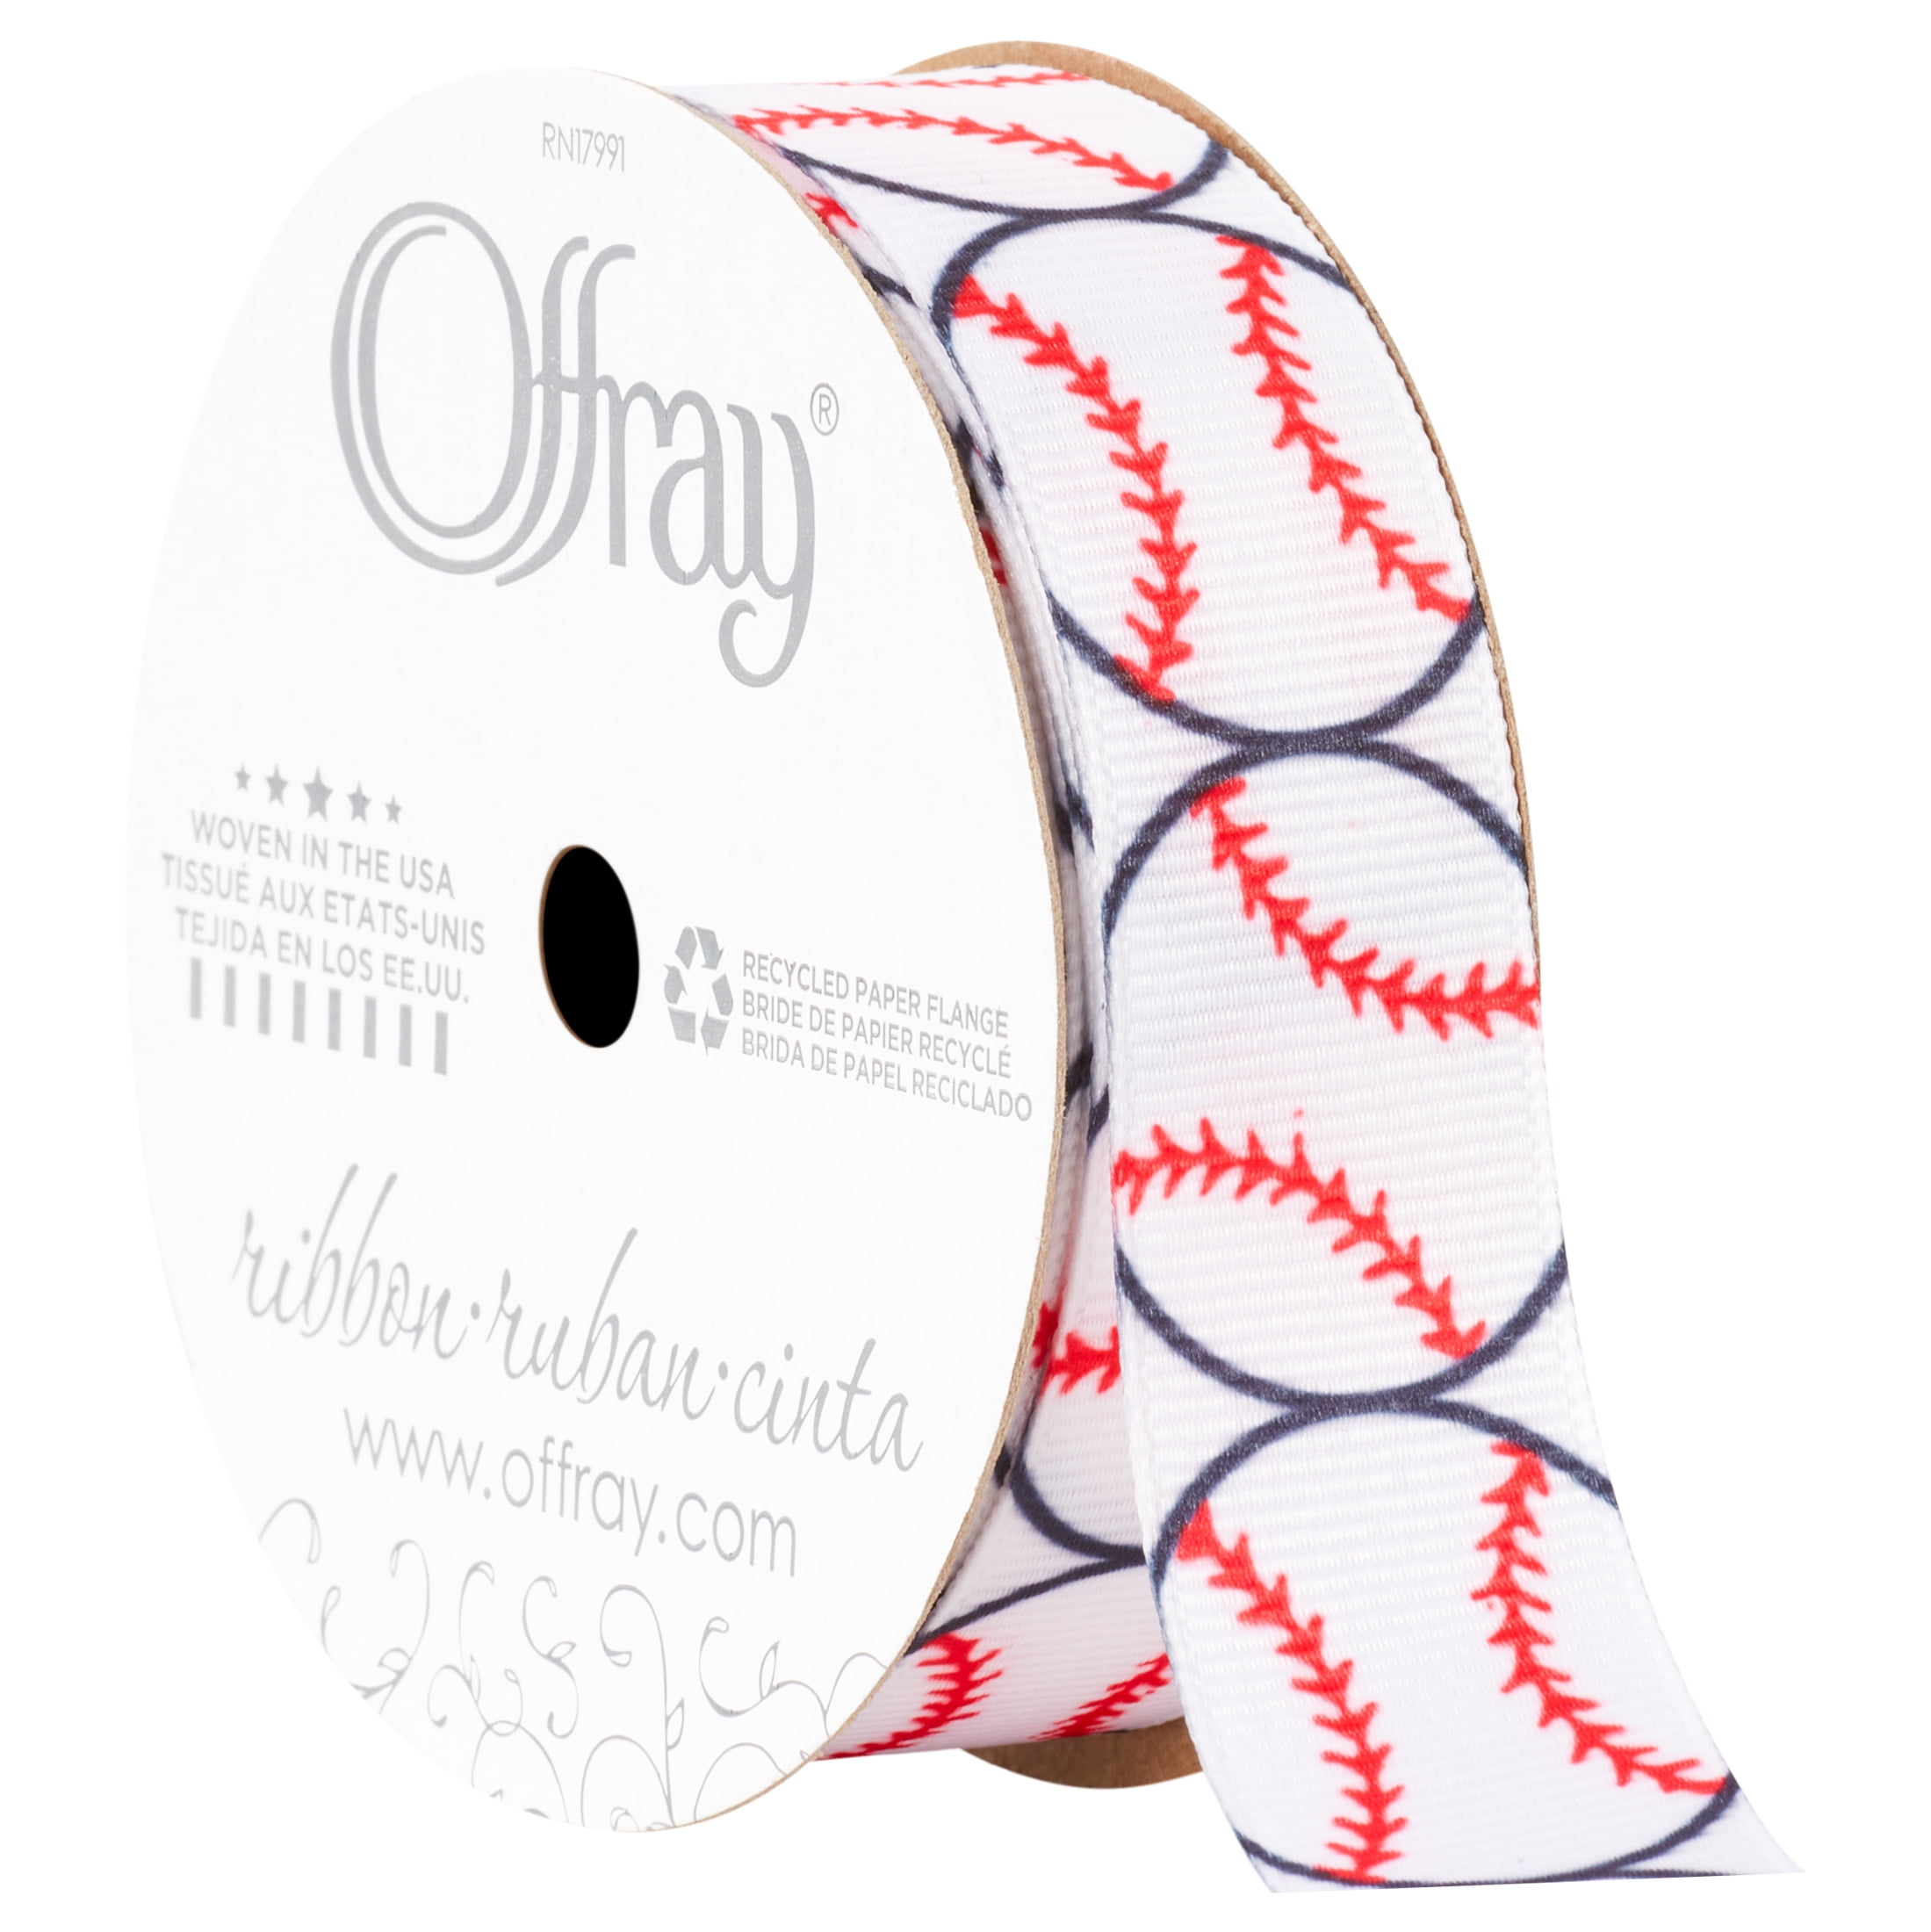 Offray Ribbon, Black White Red 7/8 inch Baseball Grosgrain Ribbon, 9 feet